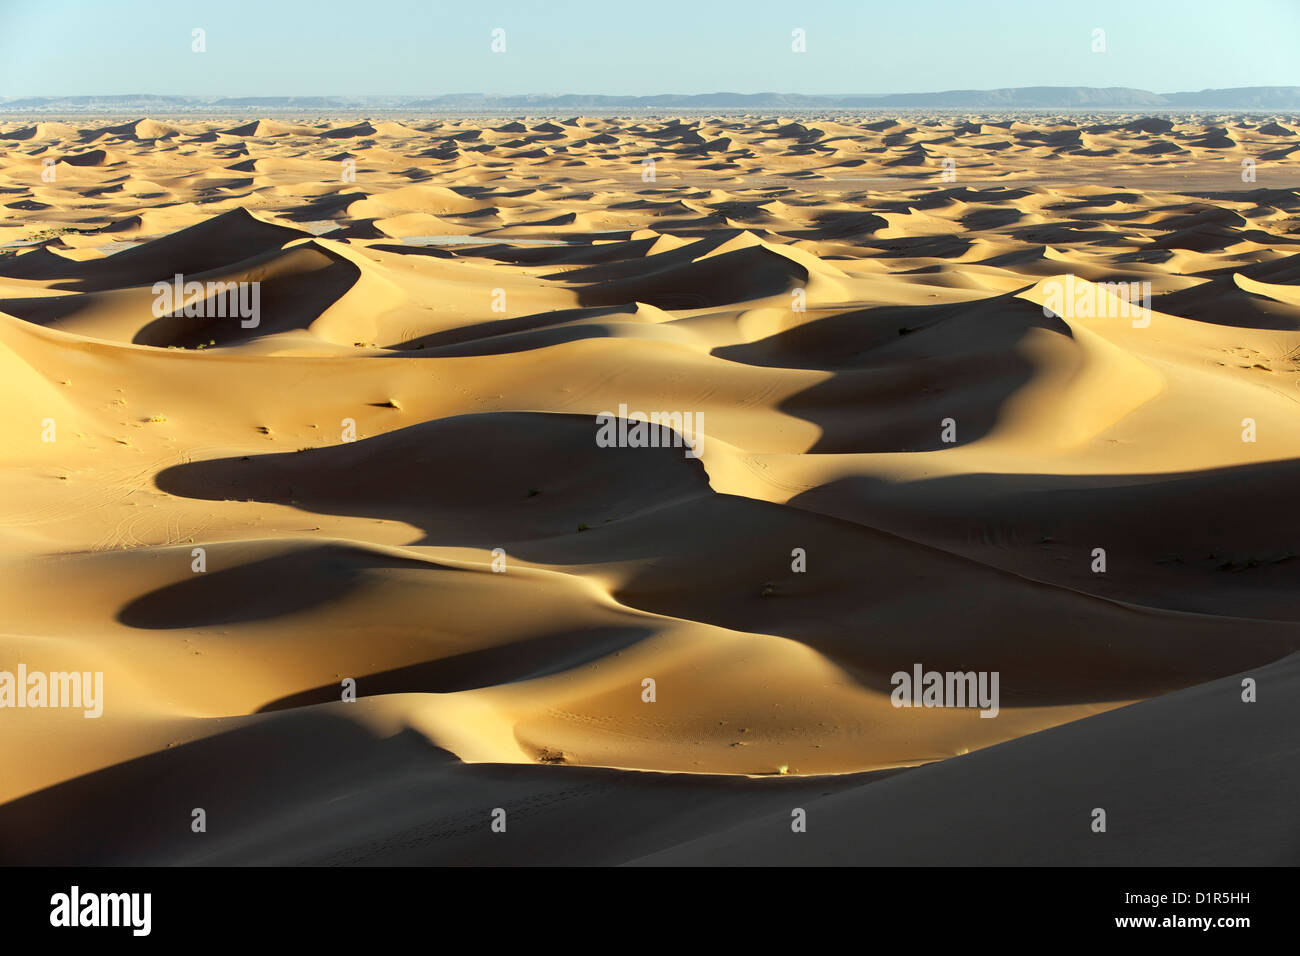 Il Marocco, M'Hamid, Erg Chigaga dune di sabbia. Deserto del Sahara. Foto Stock